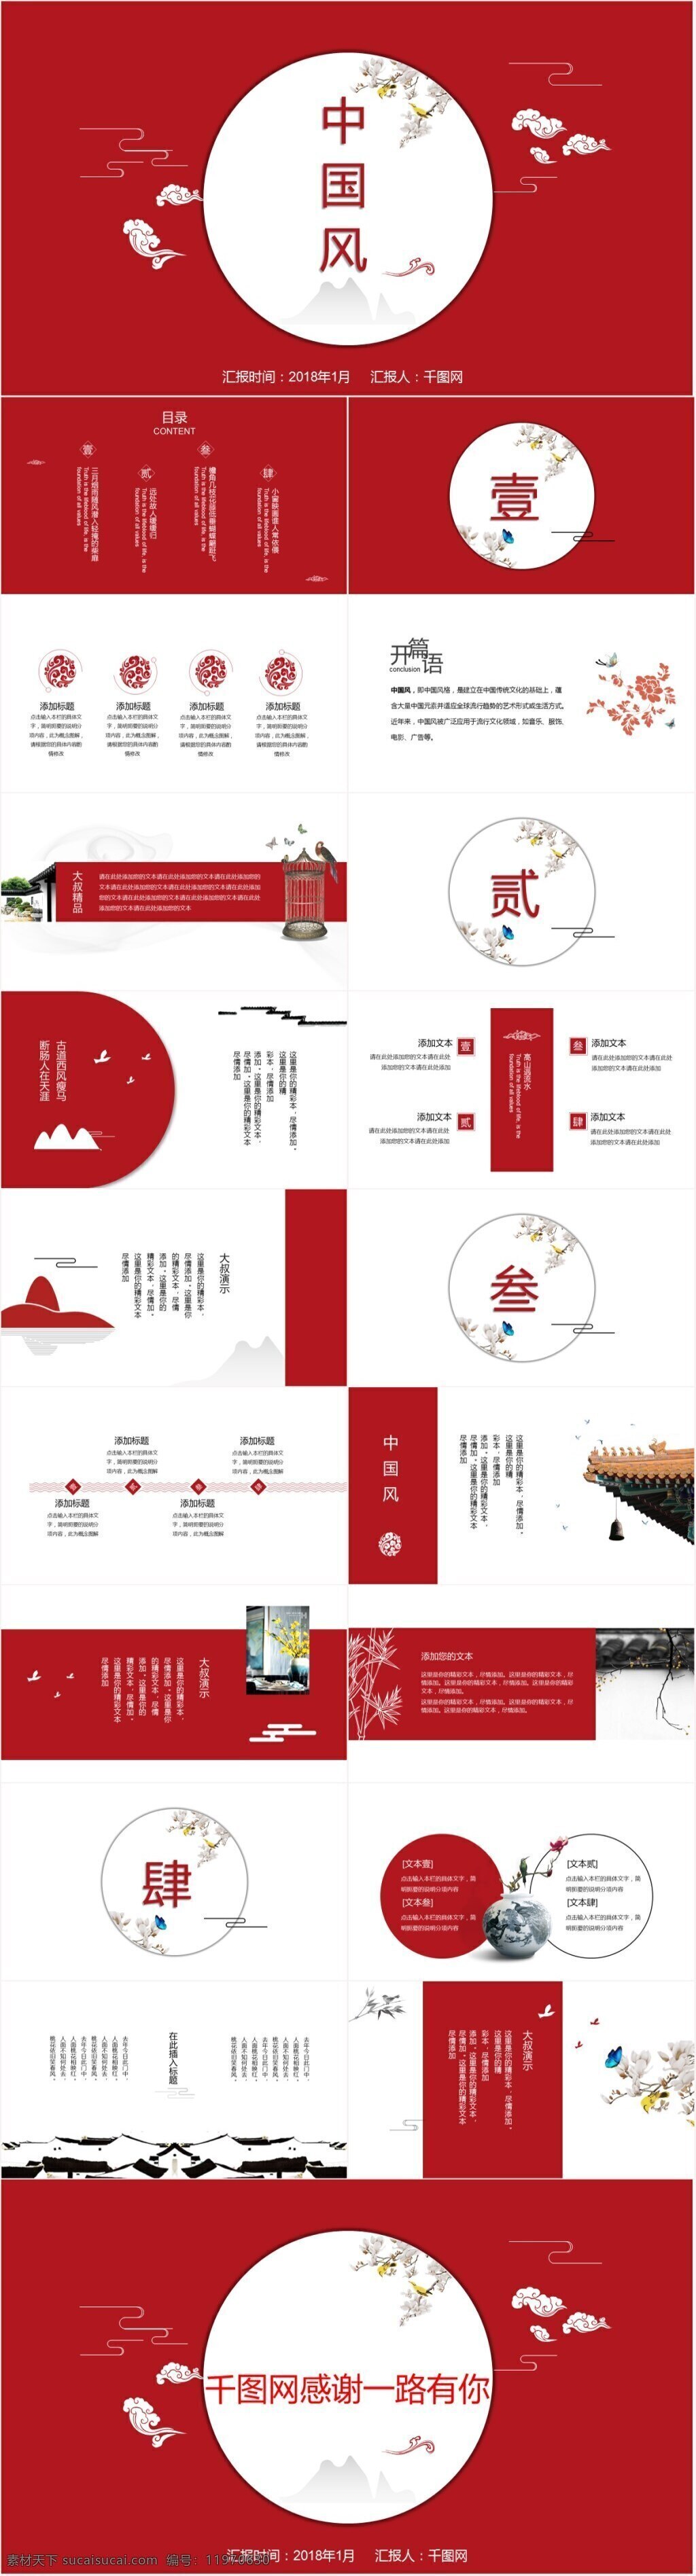 中国 红 商务 汇报 通用 模板 ppt模板 大气 工作汇报 简约 中国风